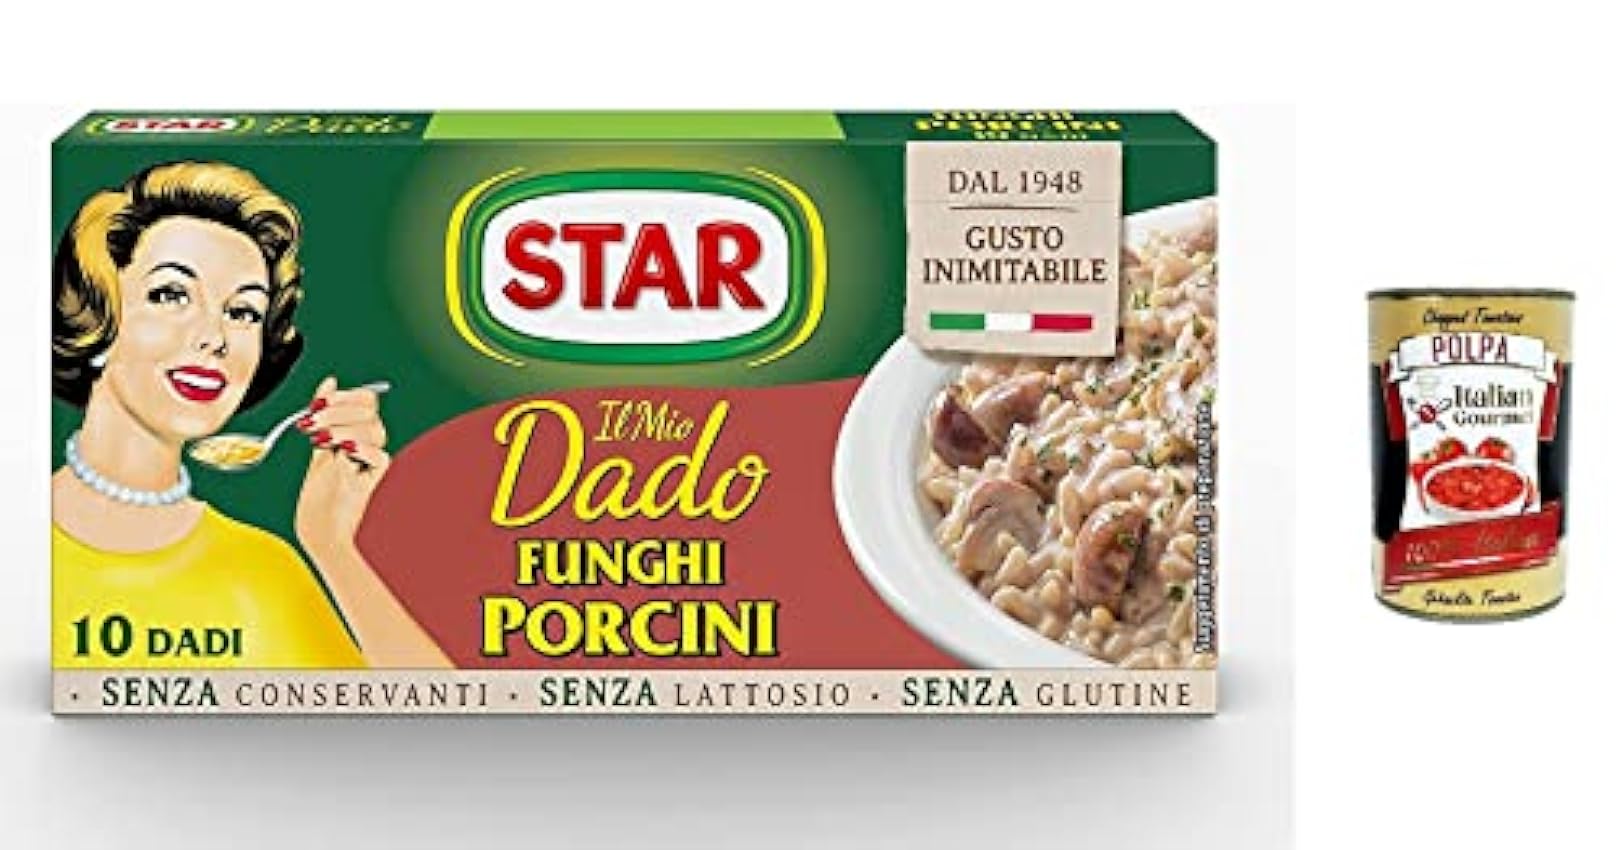 Star Dado Funghi Porcini Brodo Lot de 3 cubes de soupe 